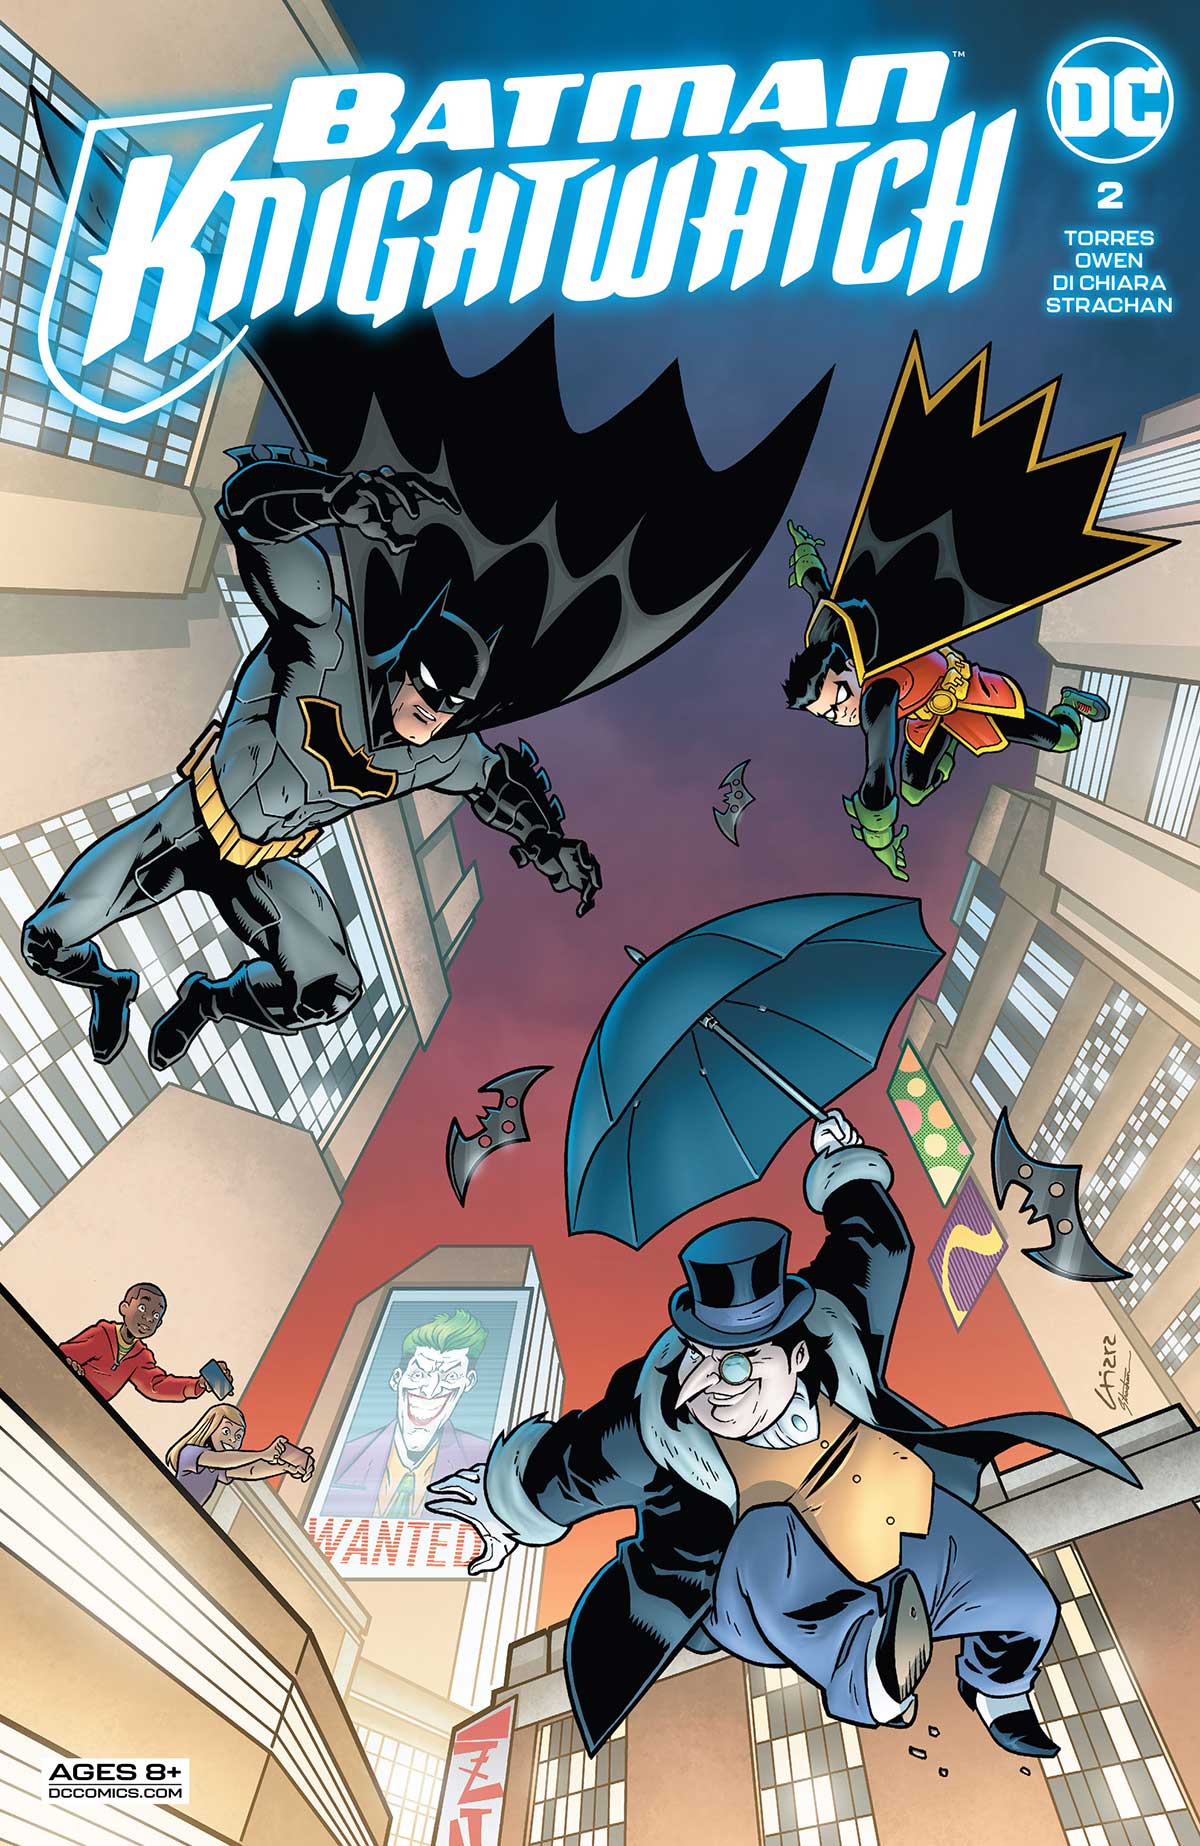 PREVIEW: Batman – Knightwatch #2